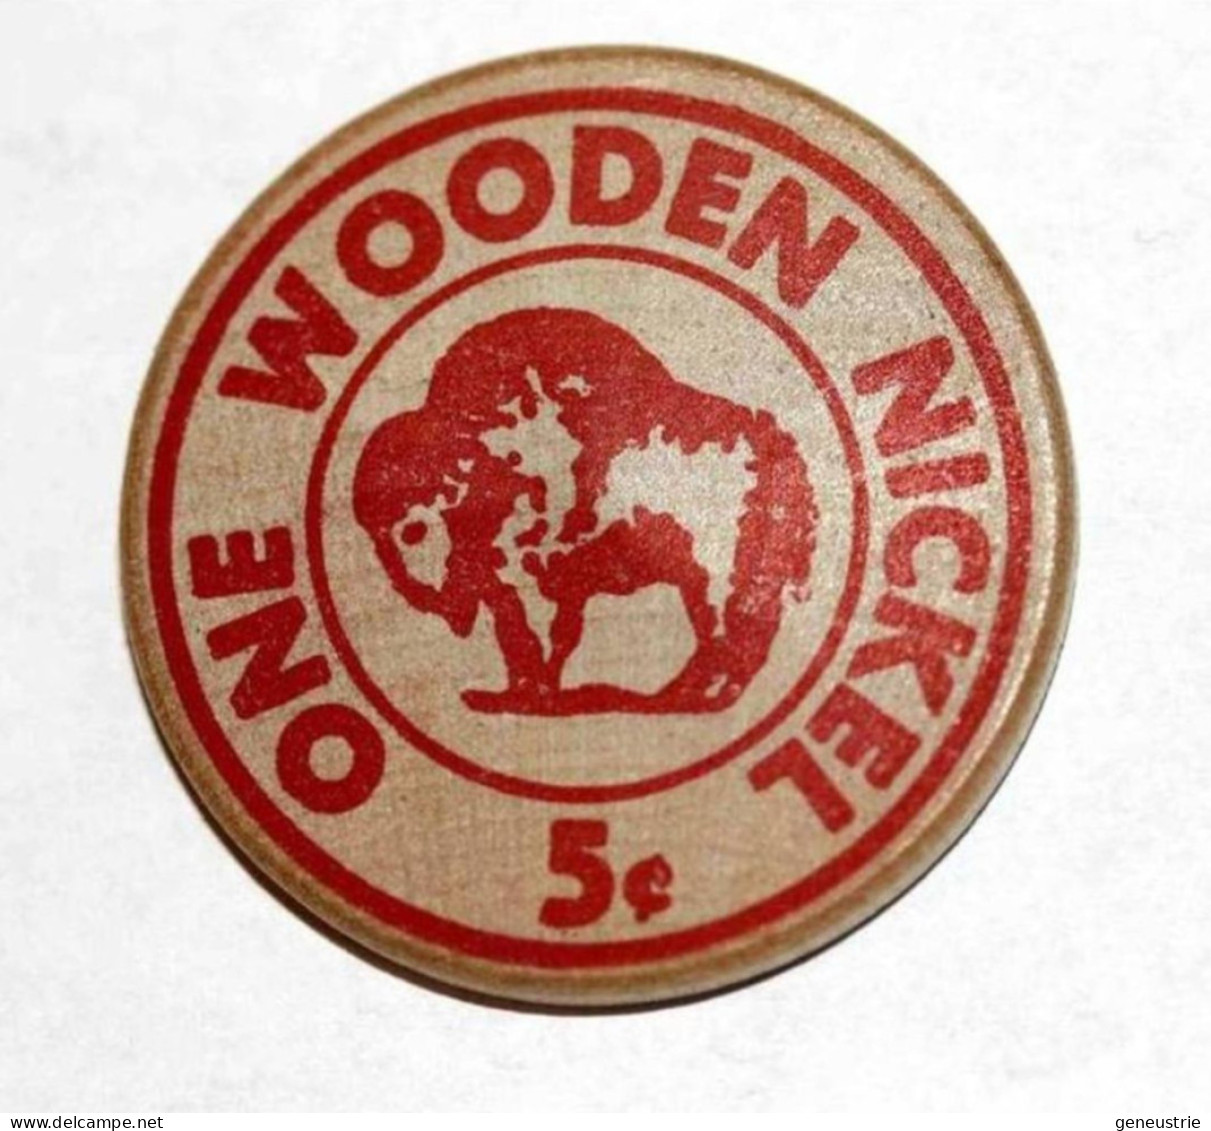 Rare Wooden Token 3c - Wooden Nickel - Jeton Bois Monnaie Nécessité 5 Cents - Bison - Coca-Cola - Etats-Unis - Monetari/ Di Necessità